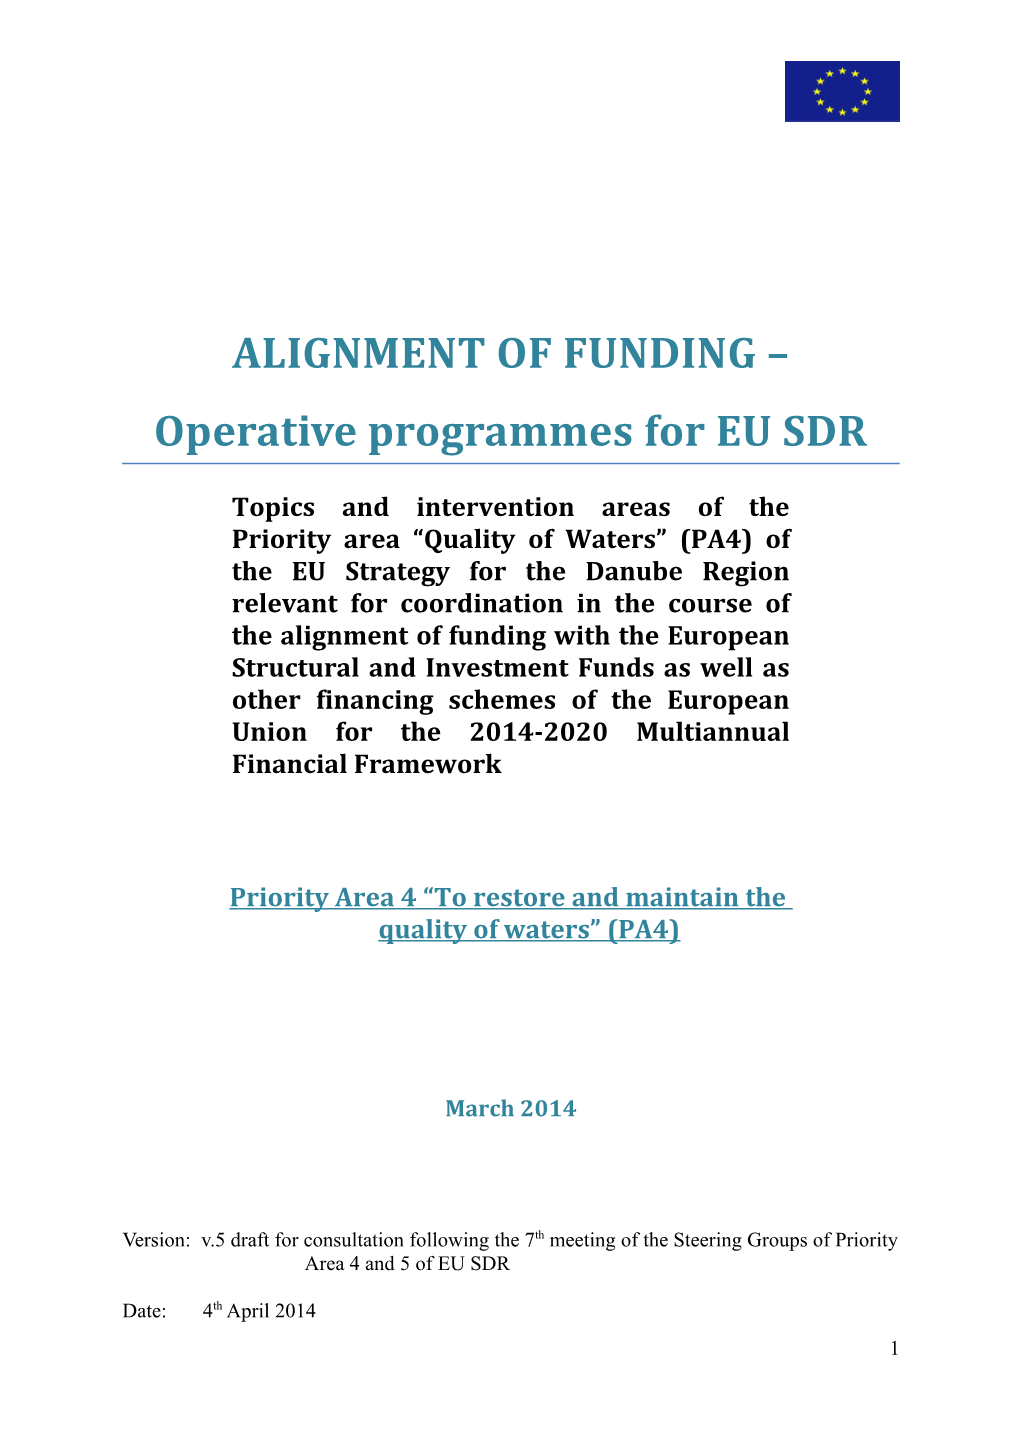 Operative Programmes for EU SDR